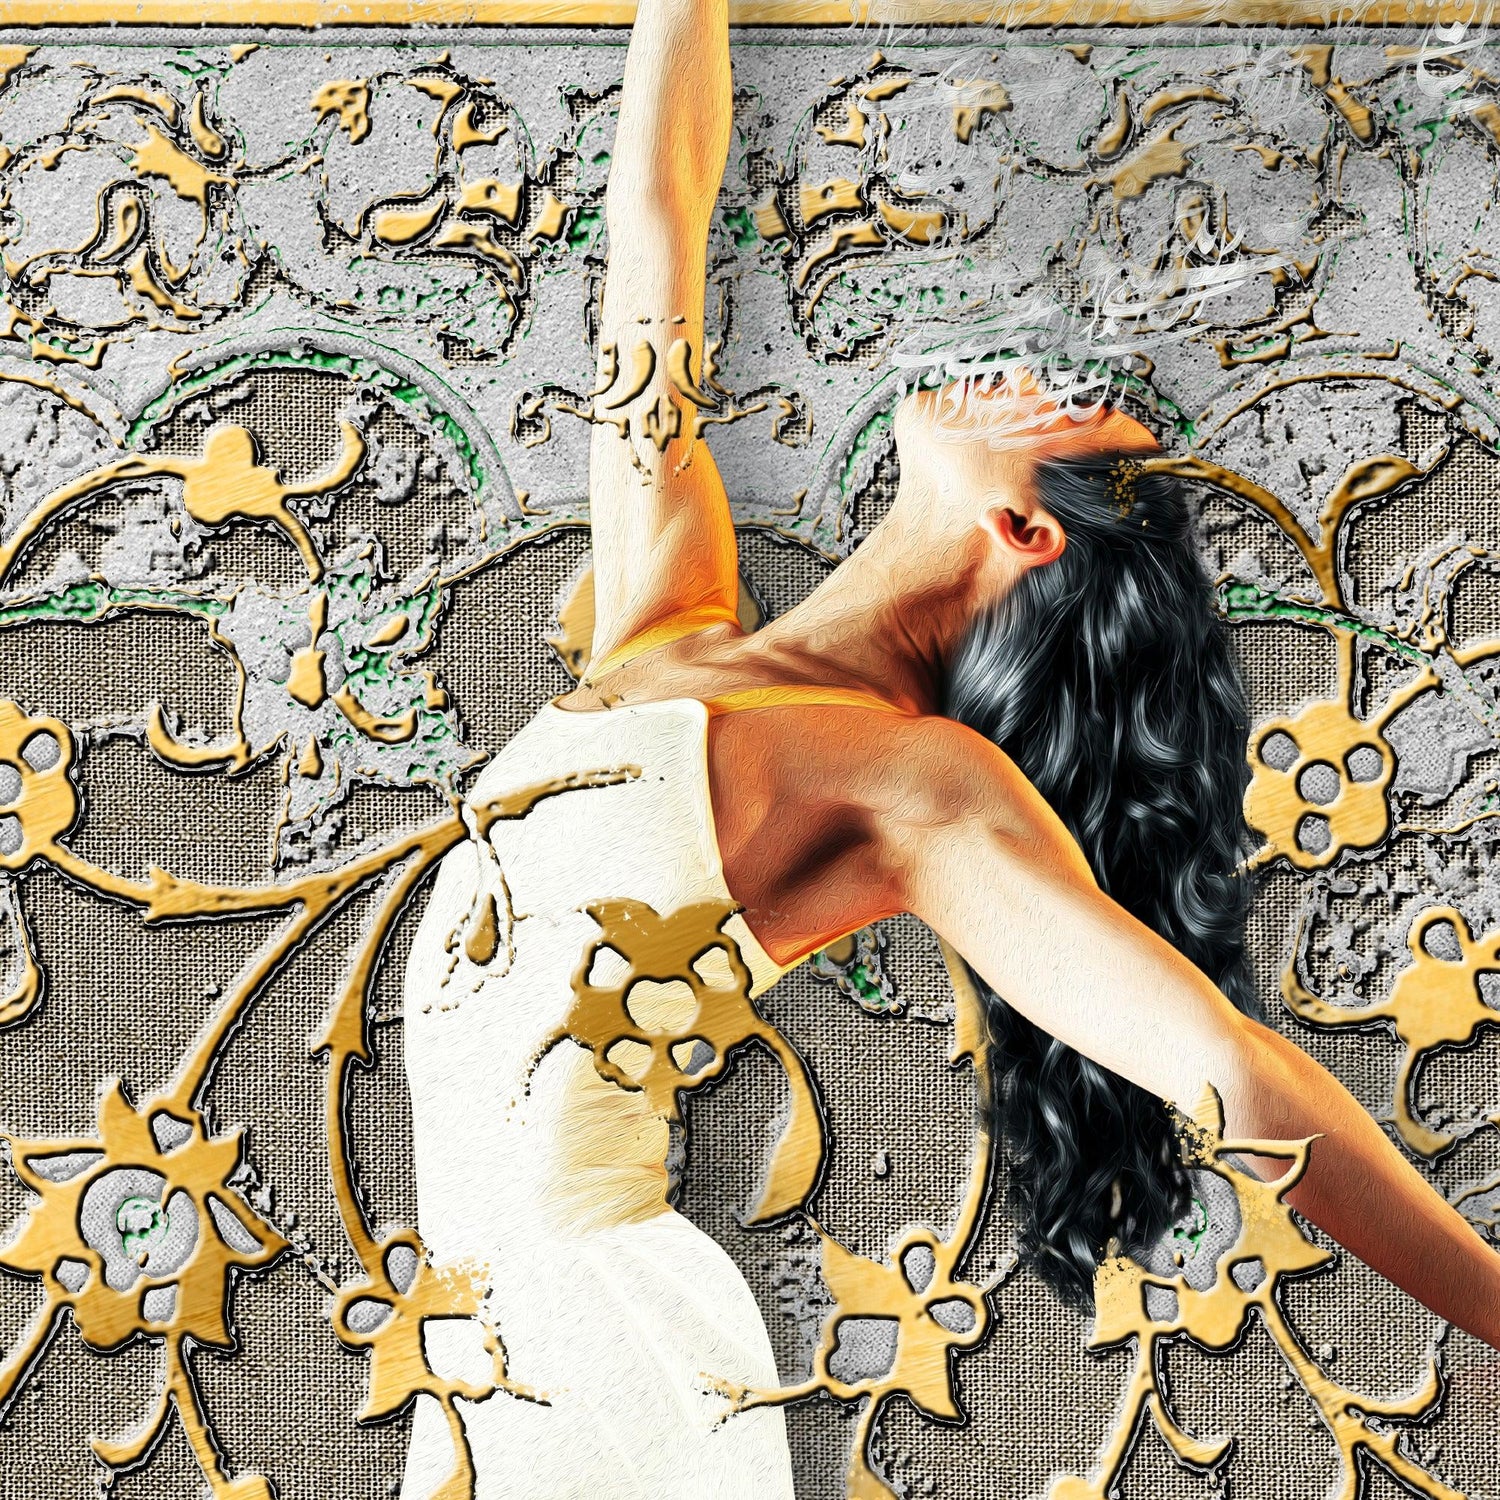 WOMAN LIFE FREEDOM - زن زندگی آزادی | Persian Art - ORIAVI Persian Art, persian artwork for sale, persian calligraphy, persian calligraphy wall art, persian mix media wall art, persian painting, persian wall art